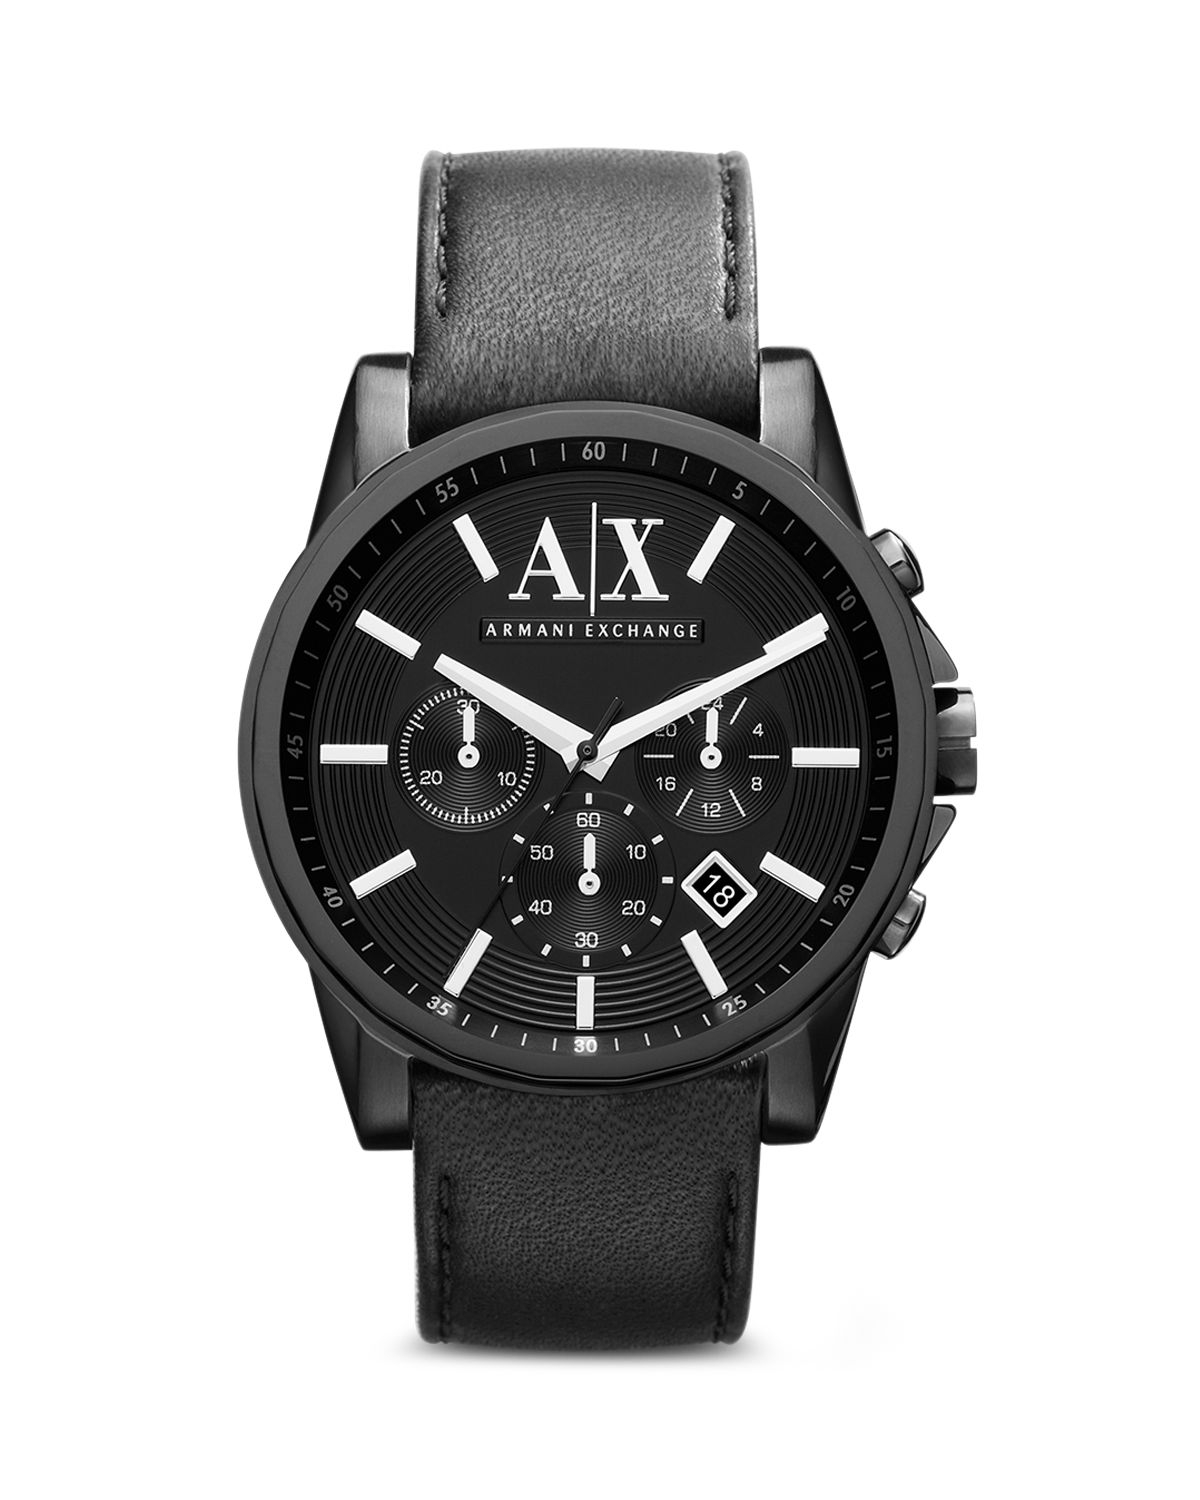 Armani Exchange A|X Armani Exchange Leather Strap Chronograph Watch